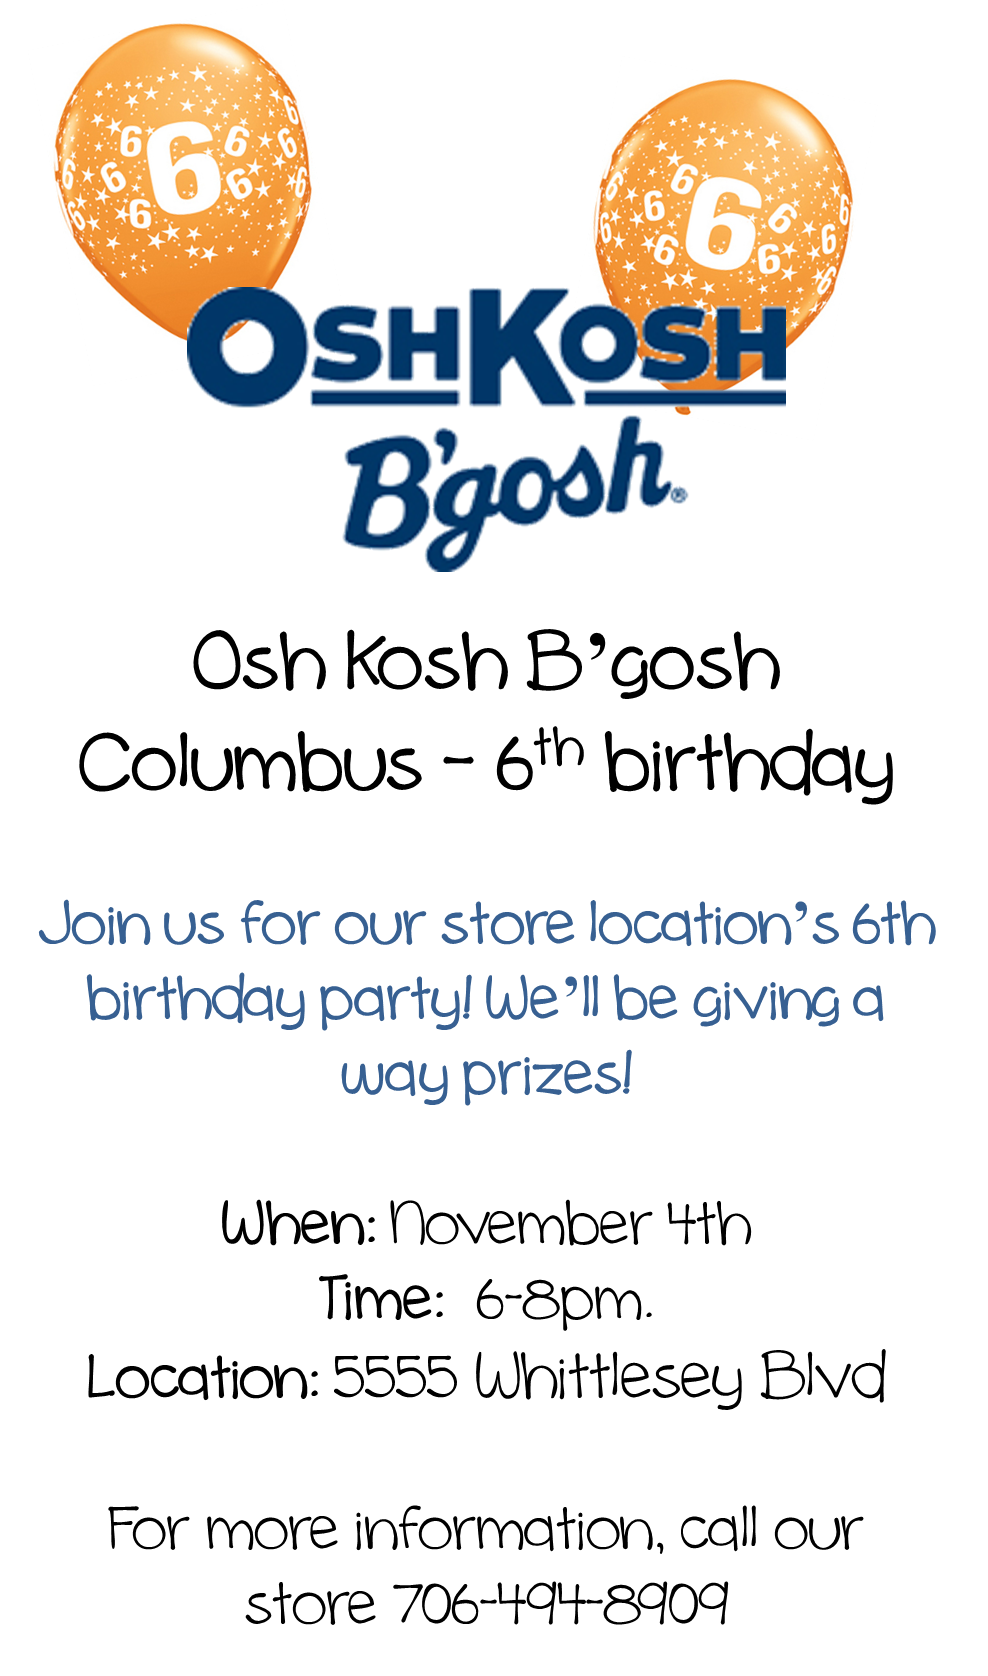 Celebrate Oshkosh B’gosh’s 6th Birthday